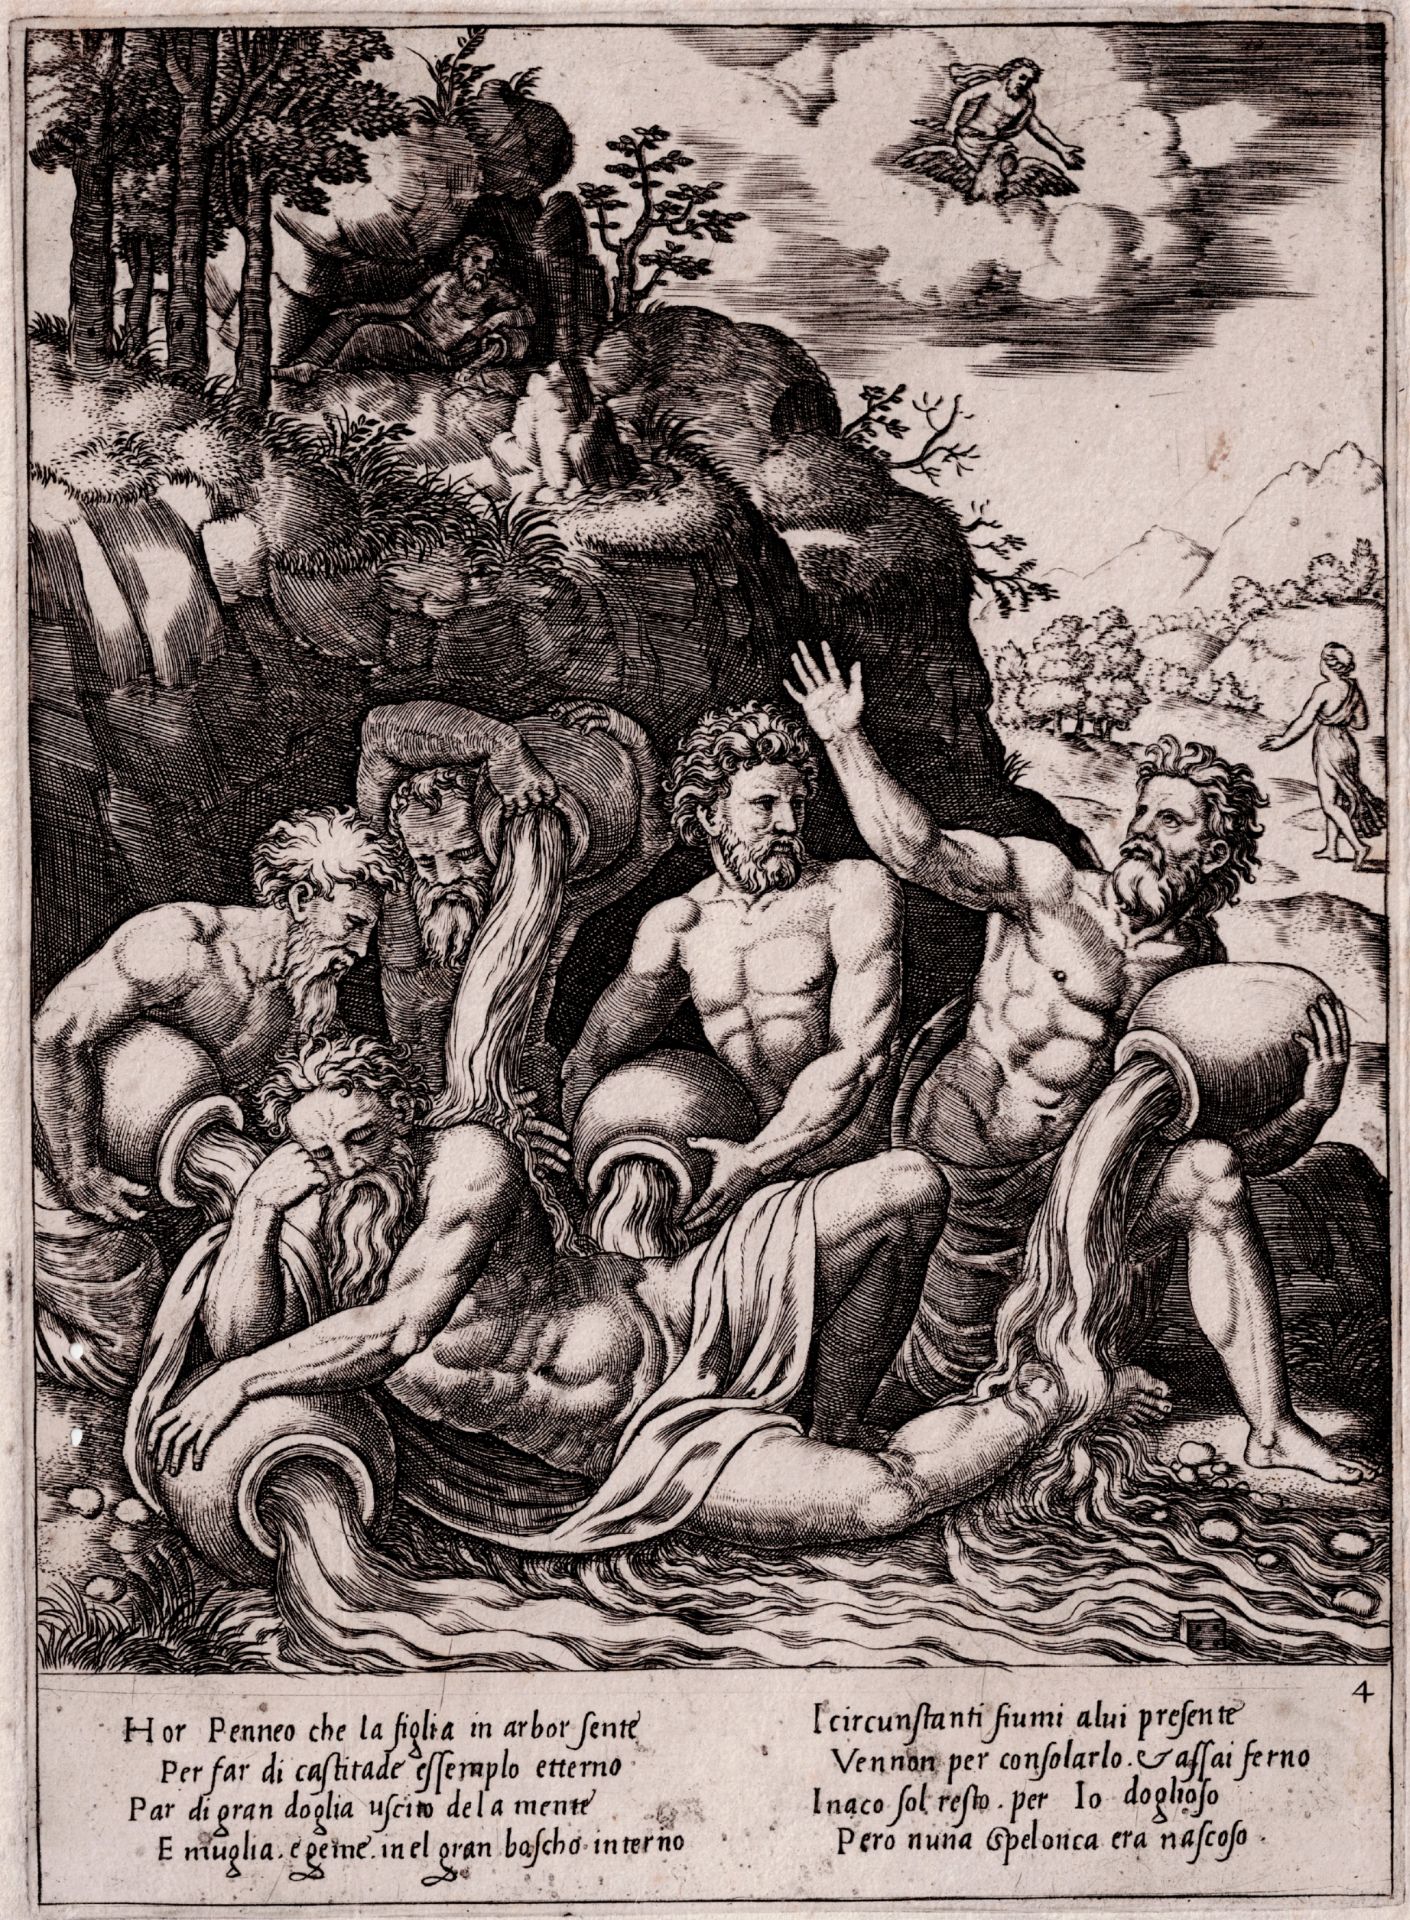 Master of the Die (1530-1560 frl.)